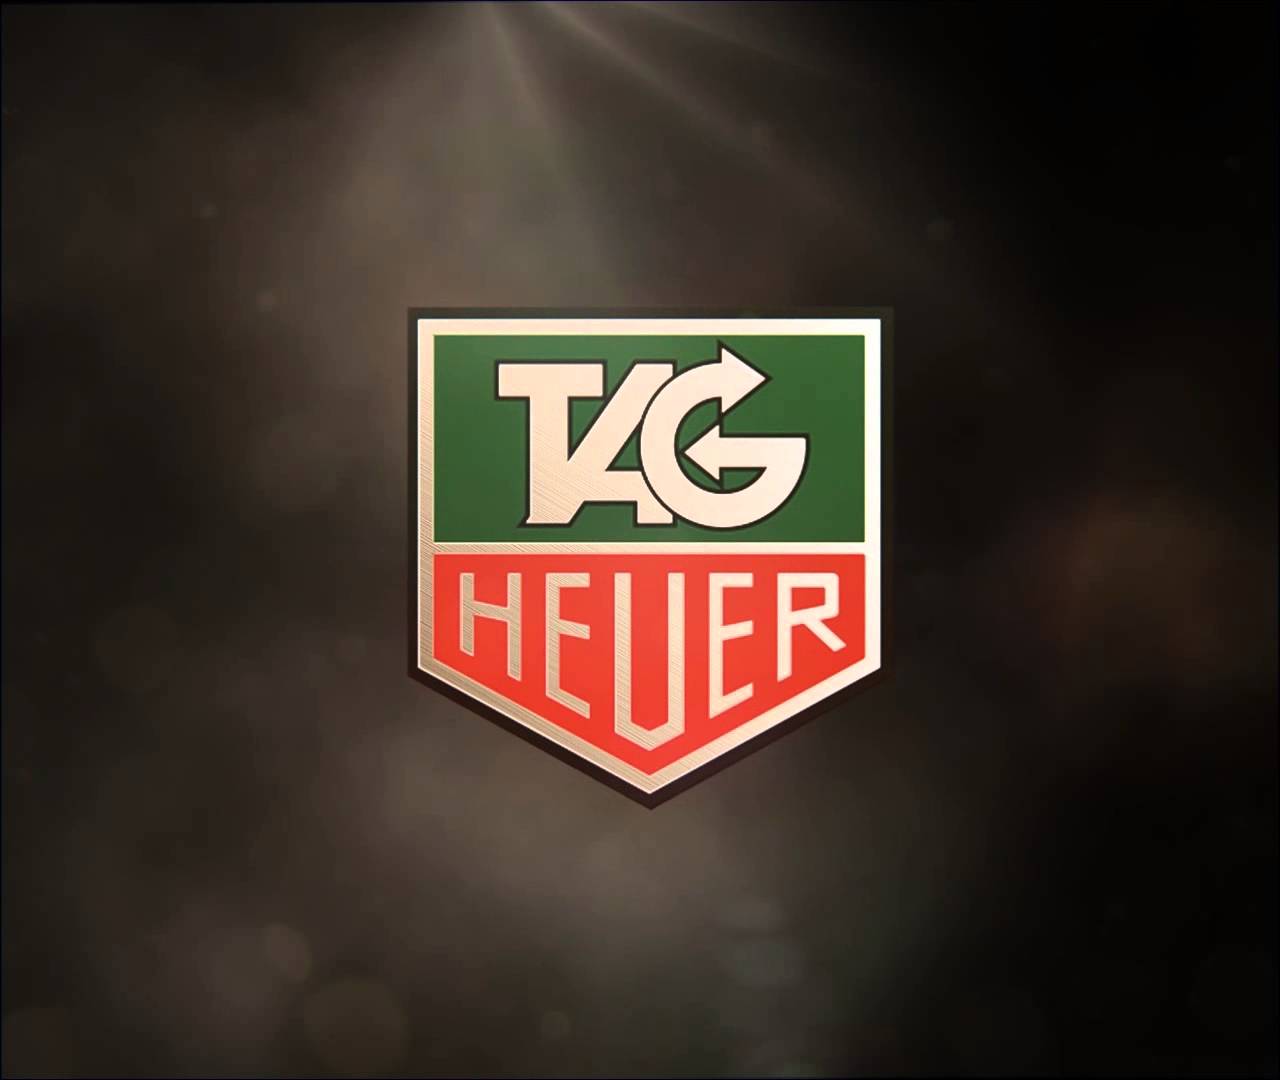 Tag Heuer Logo Image